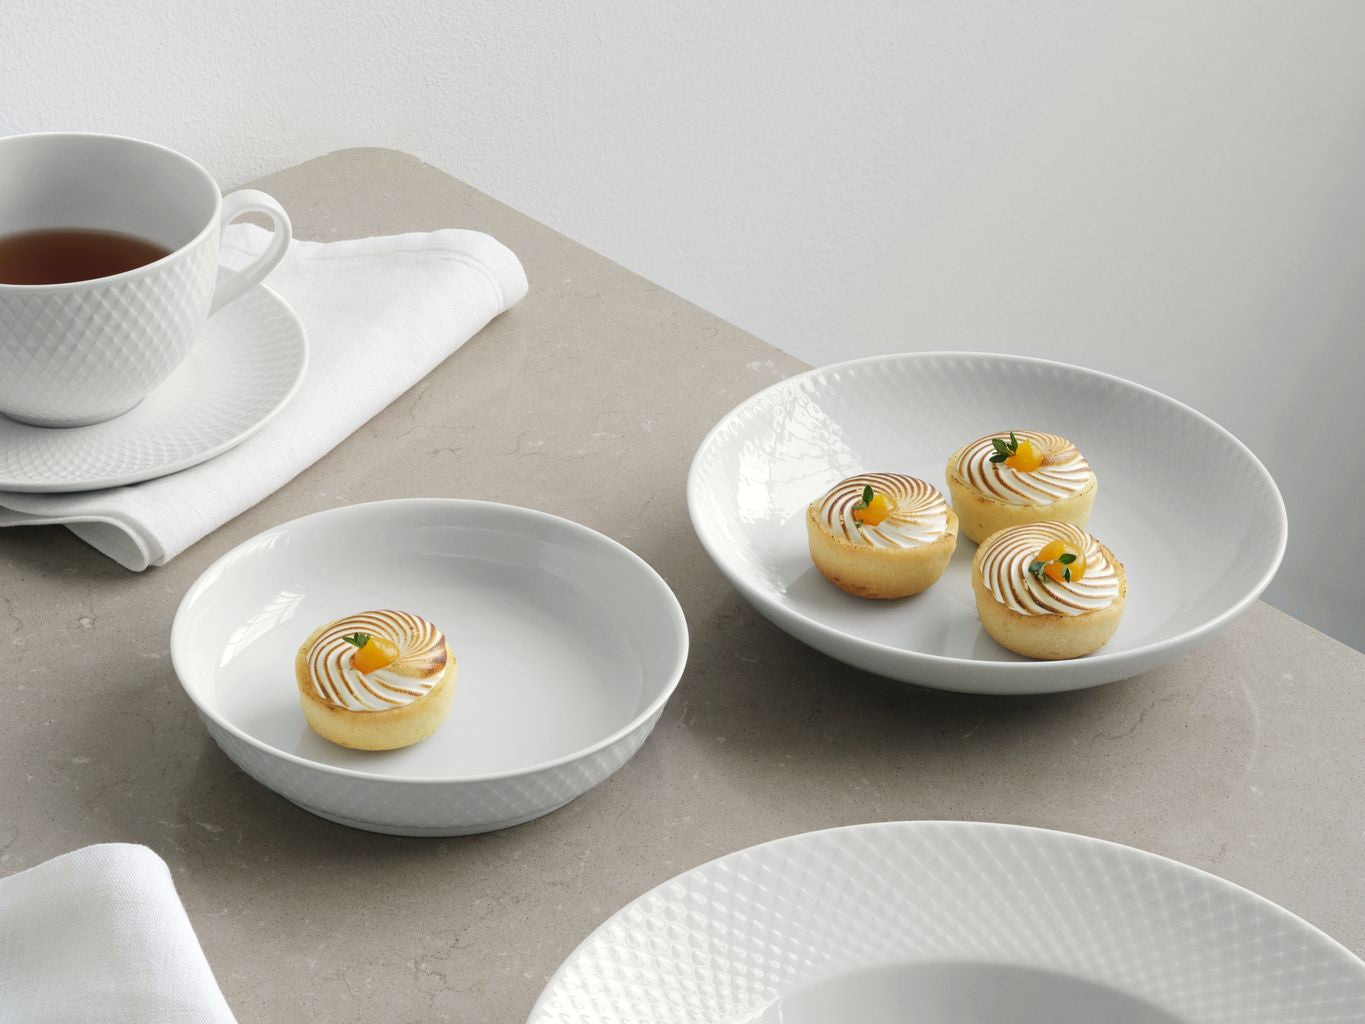 Lyngby Porcelæn Rhombe dessertplade Ø16 cm, hvid